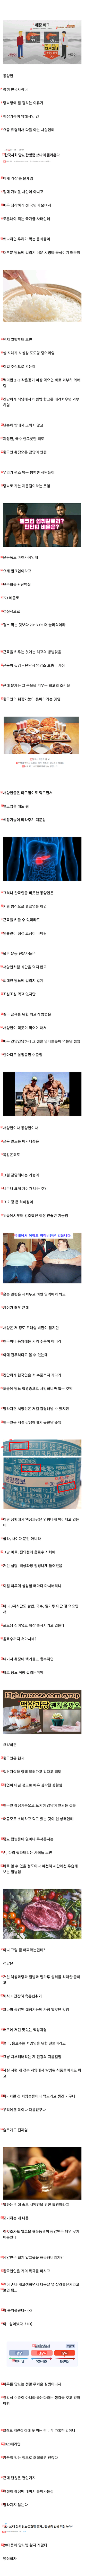 韓国人が糖尿病にかかりやすい理由